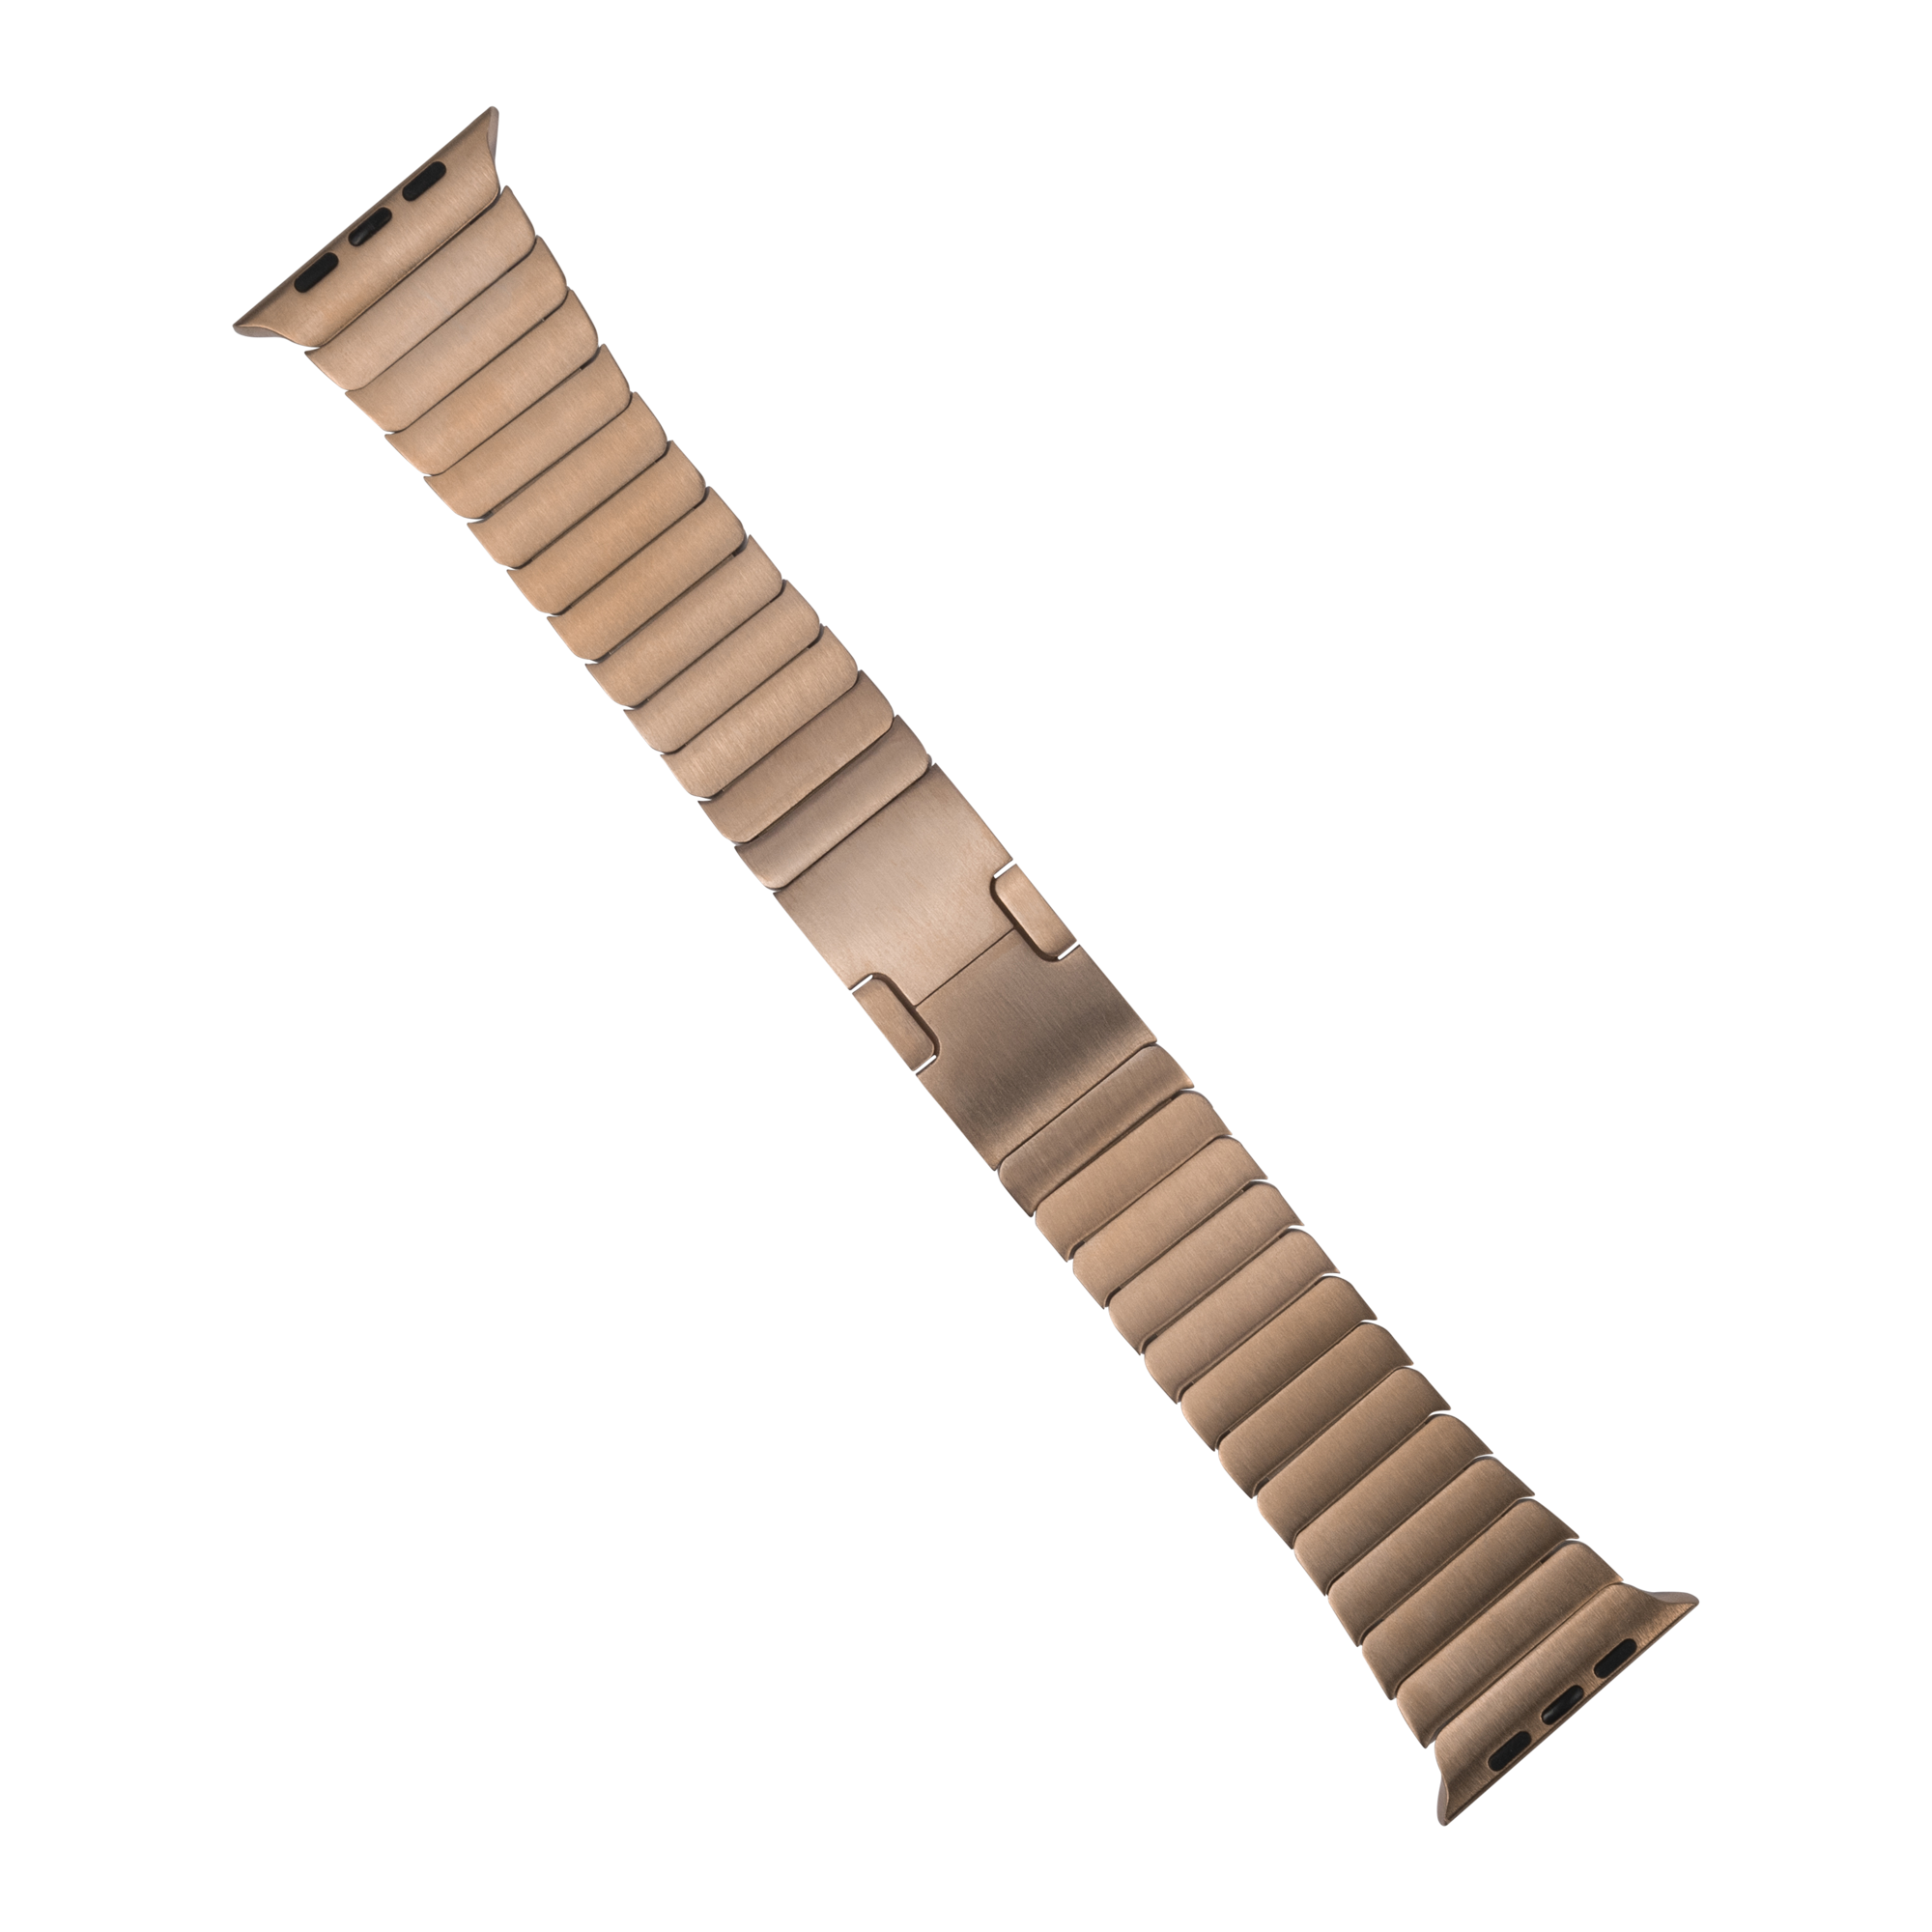 [Apple Watch] Link Bracelet - Rose Gold